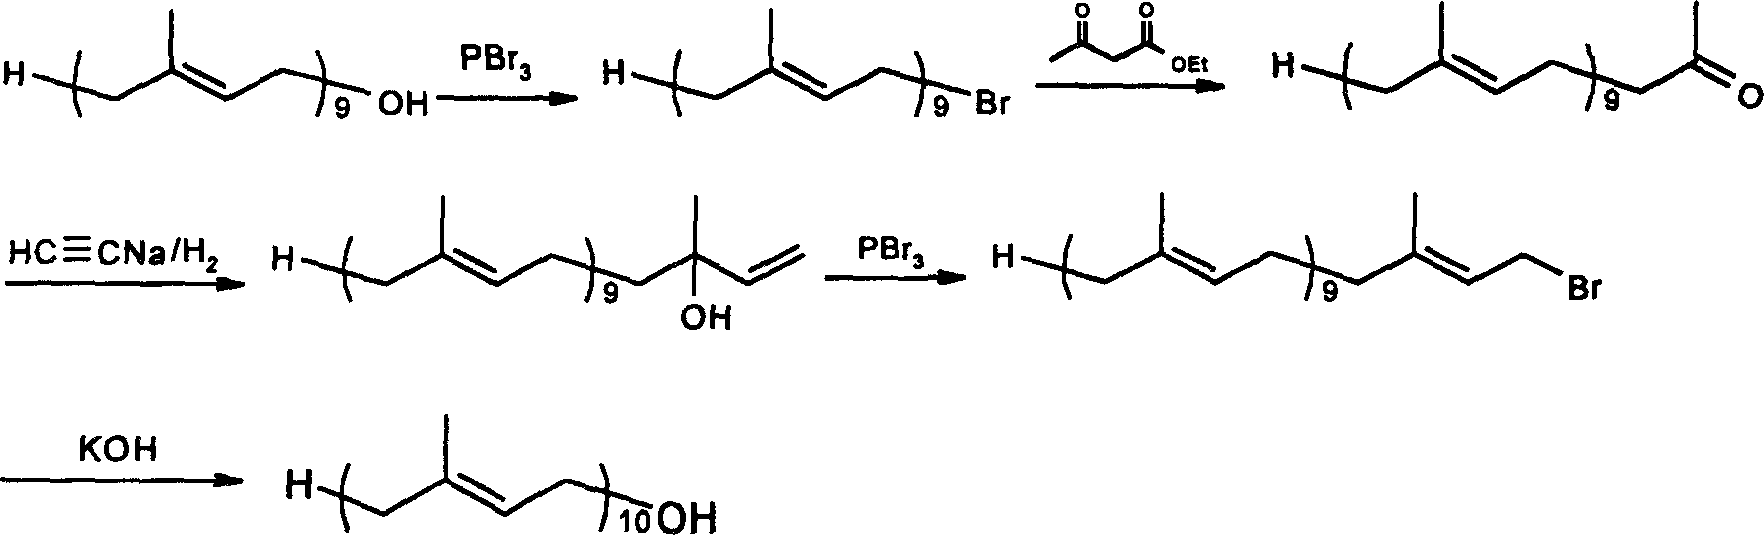 Method for synthesizing deca-isoprene alcohol